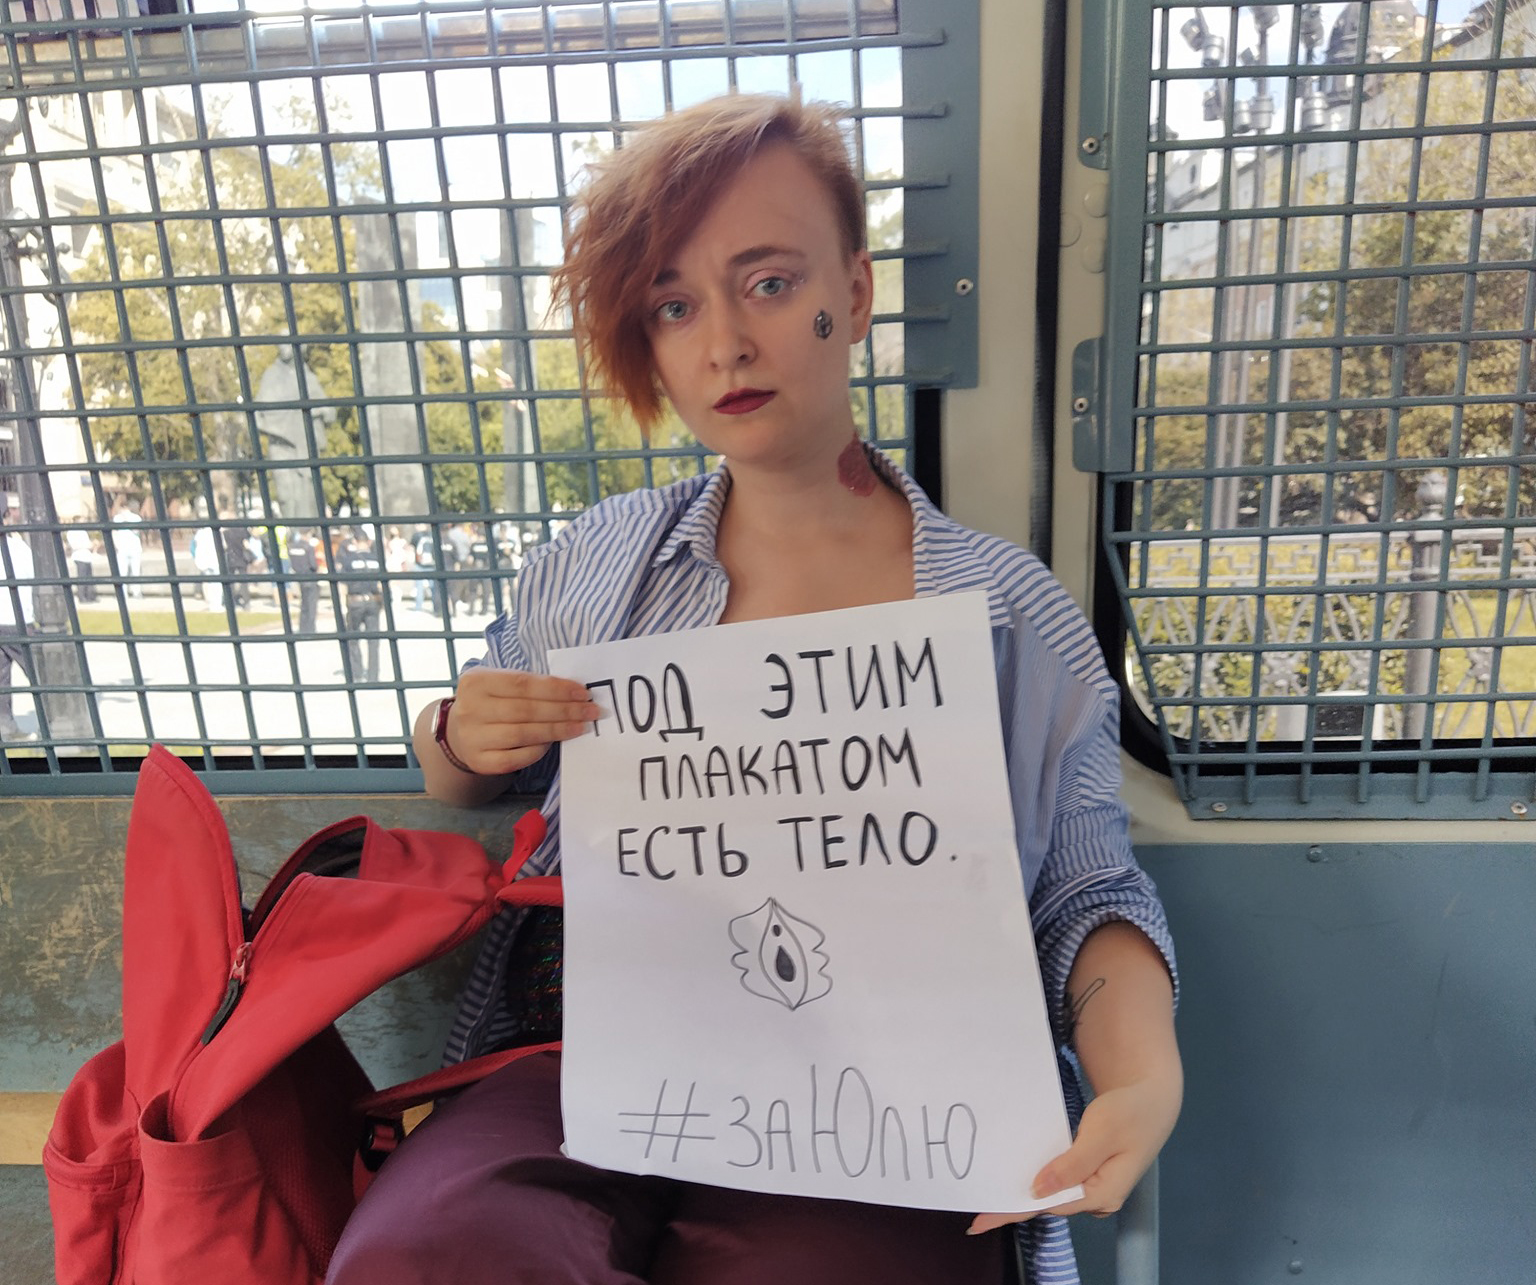 Феминистка в поезде